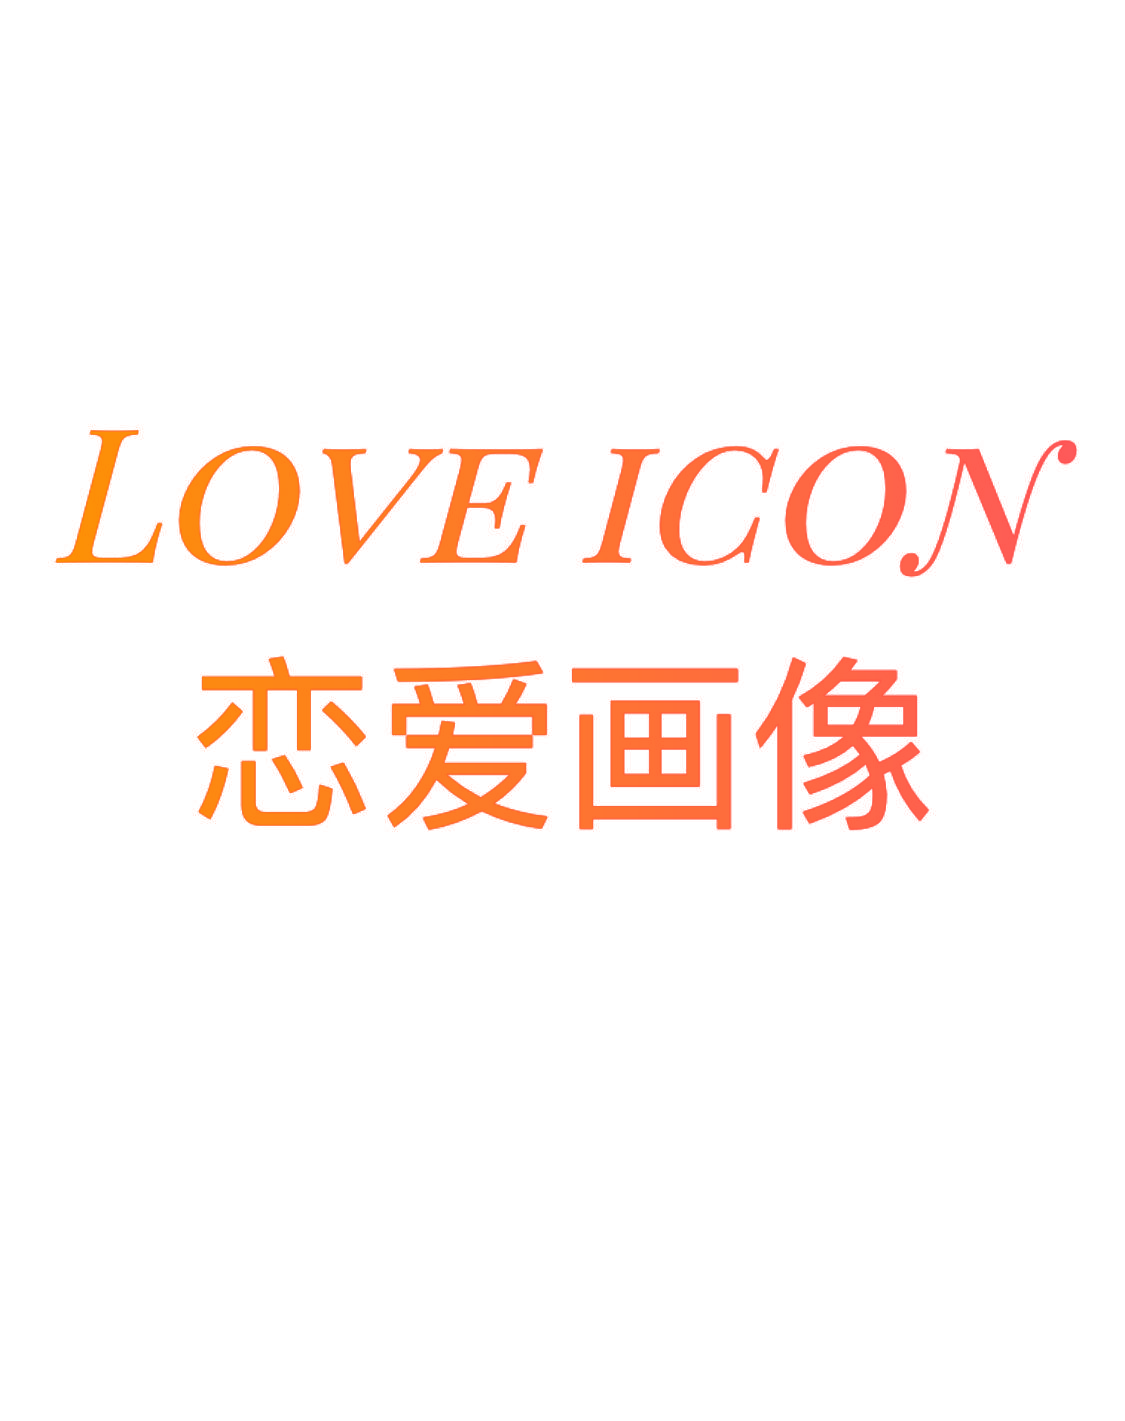 恋爱画像 LOVE ICON